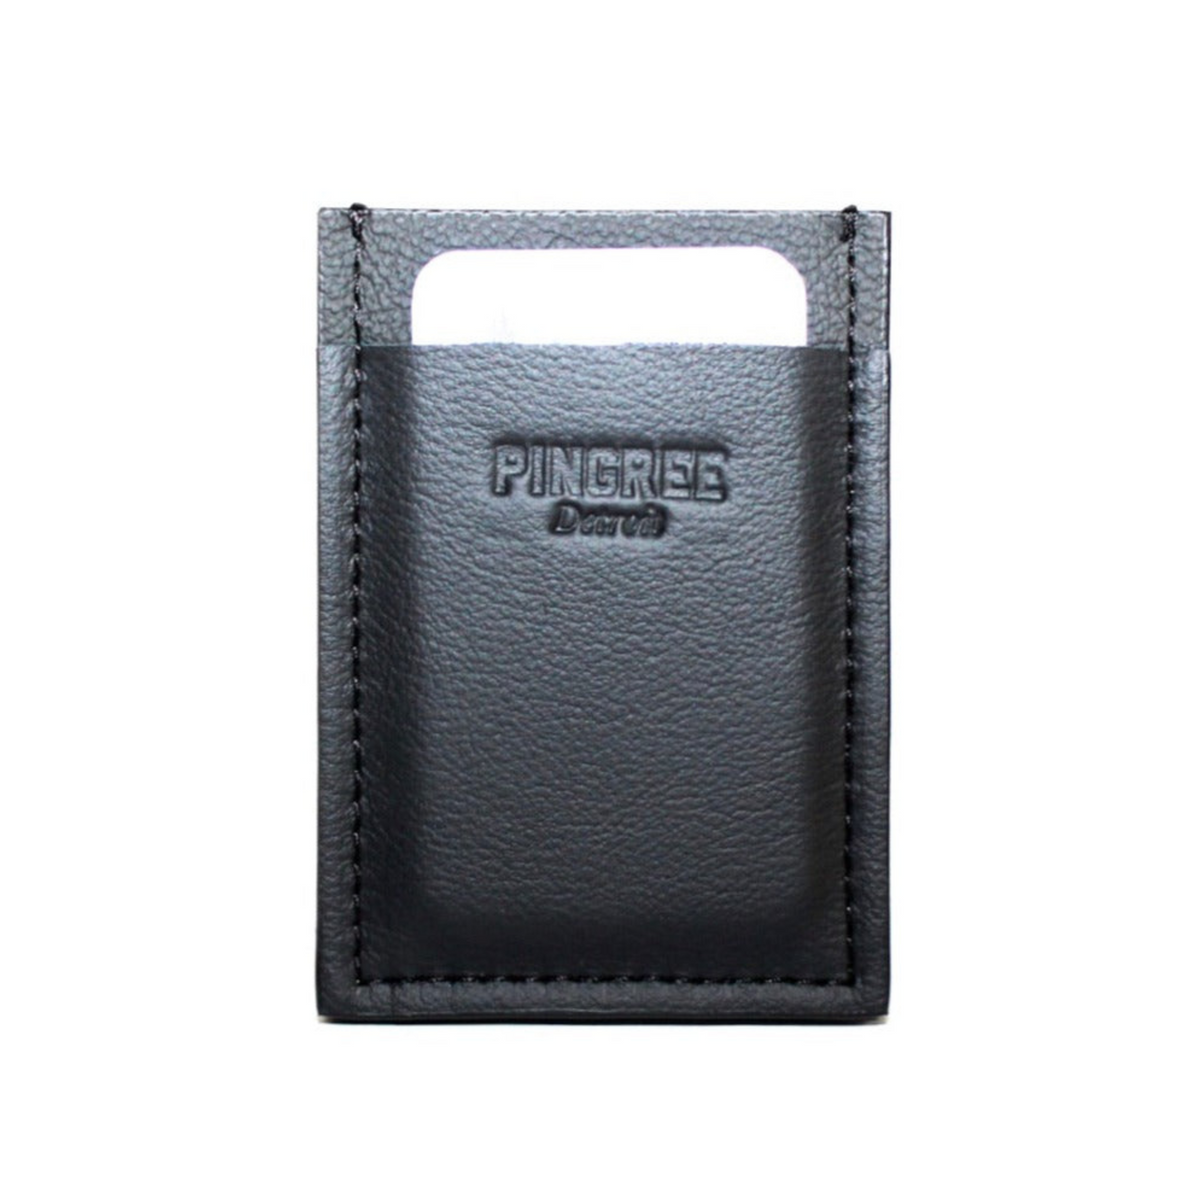 48 Elegant Wallet Designs Ideas For Men  Leather wallet, Best leather  wallet, Slim leather wallet